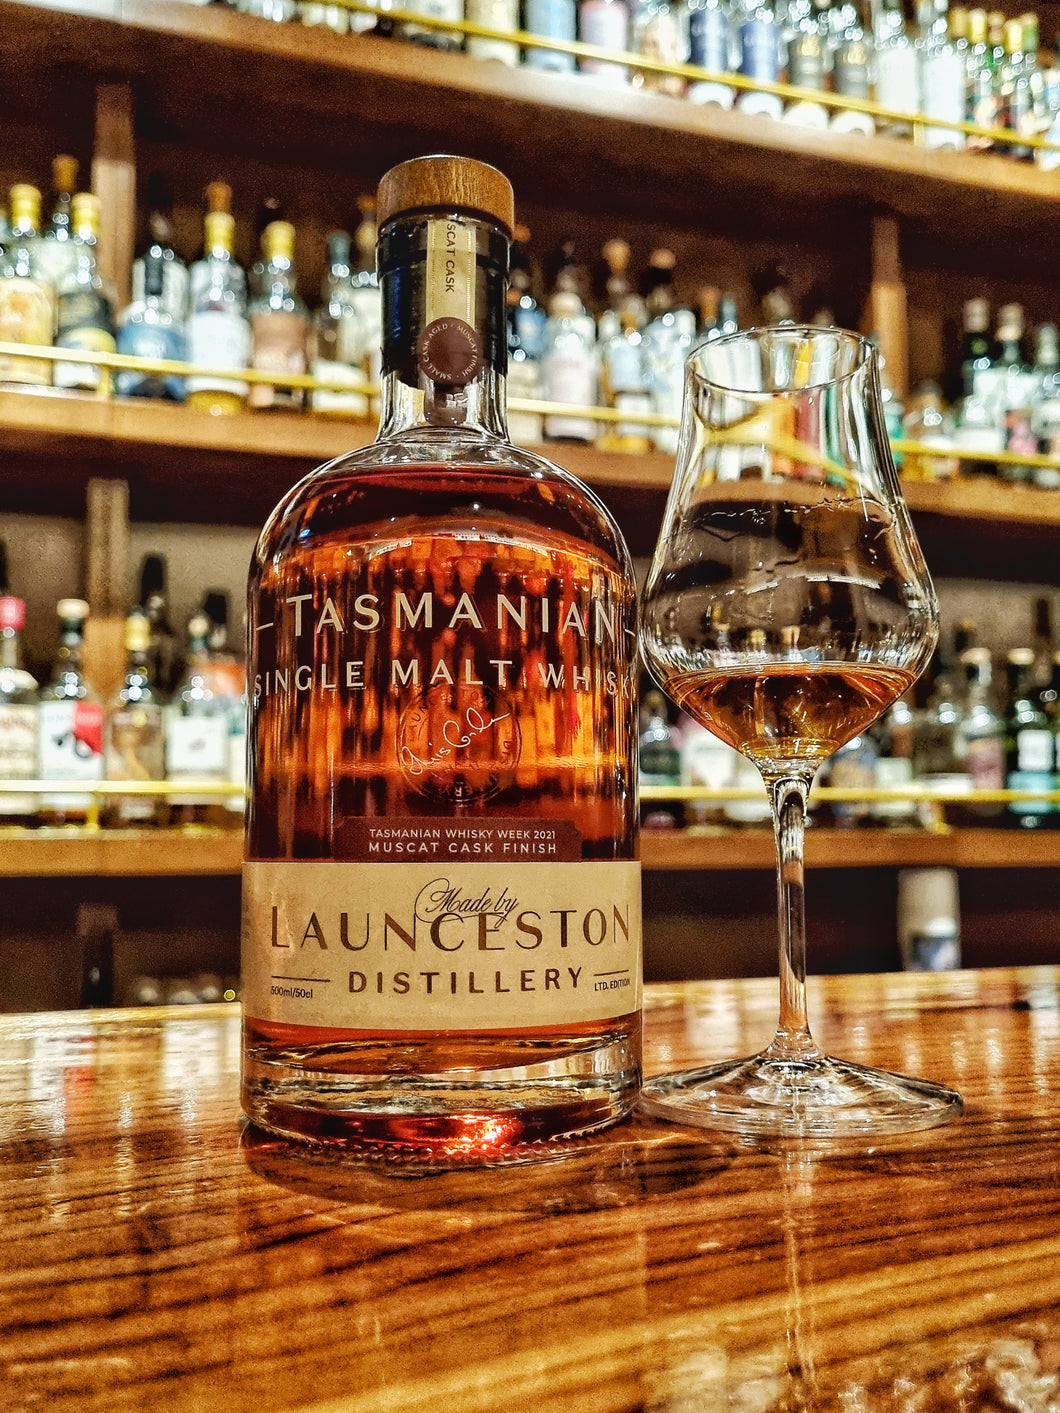 Launceston Distillery for Tasmanian Whisky Week 2021, 3yo Muscat Cask Finish, 55%